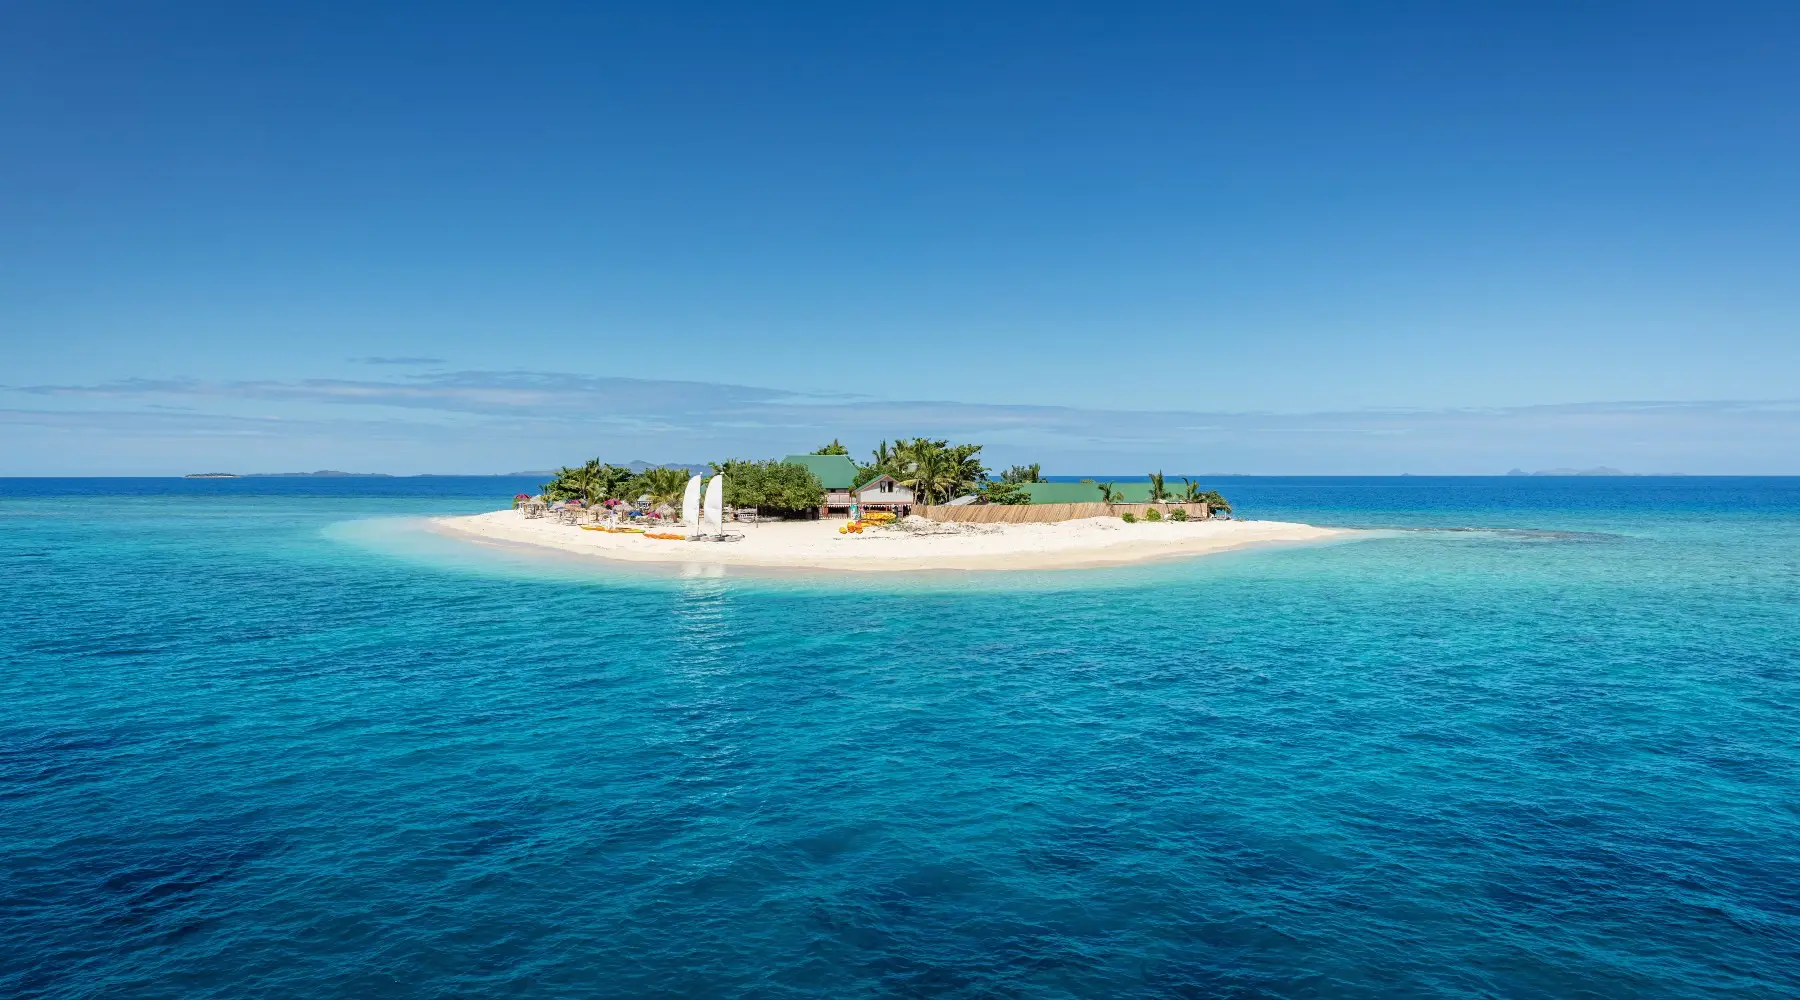 Petite île au milieu de l'océan pacifique sud avec cabines de plage, chaises longues, palmiers, entourée d'une eau turquoise claire.